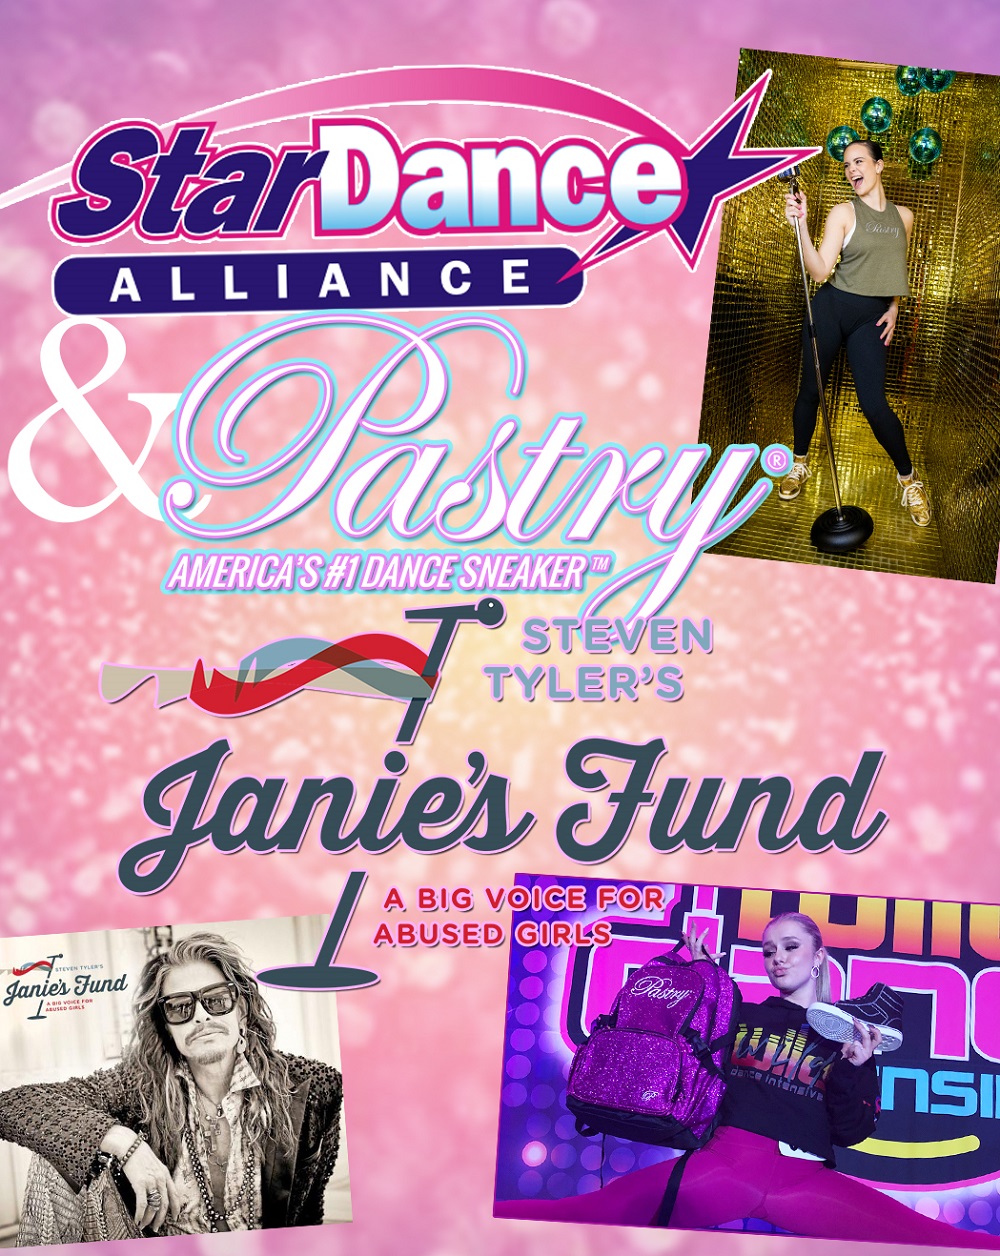 Star Dance Alliance & Pastry Sneaker Partnership